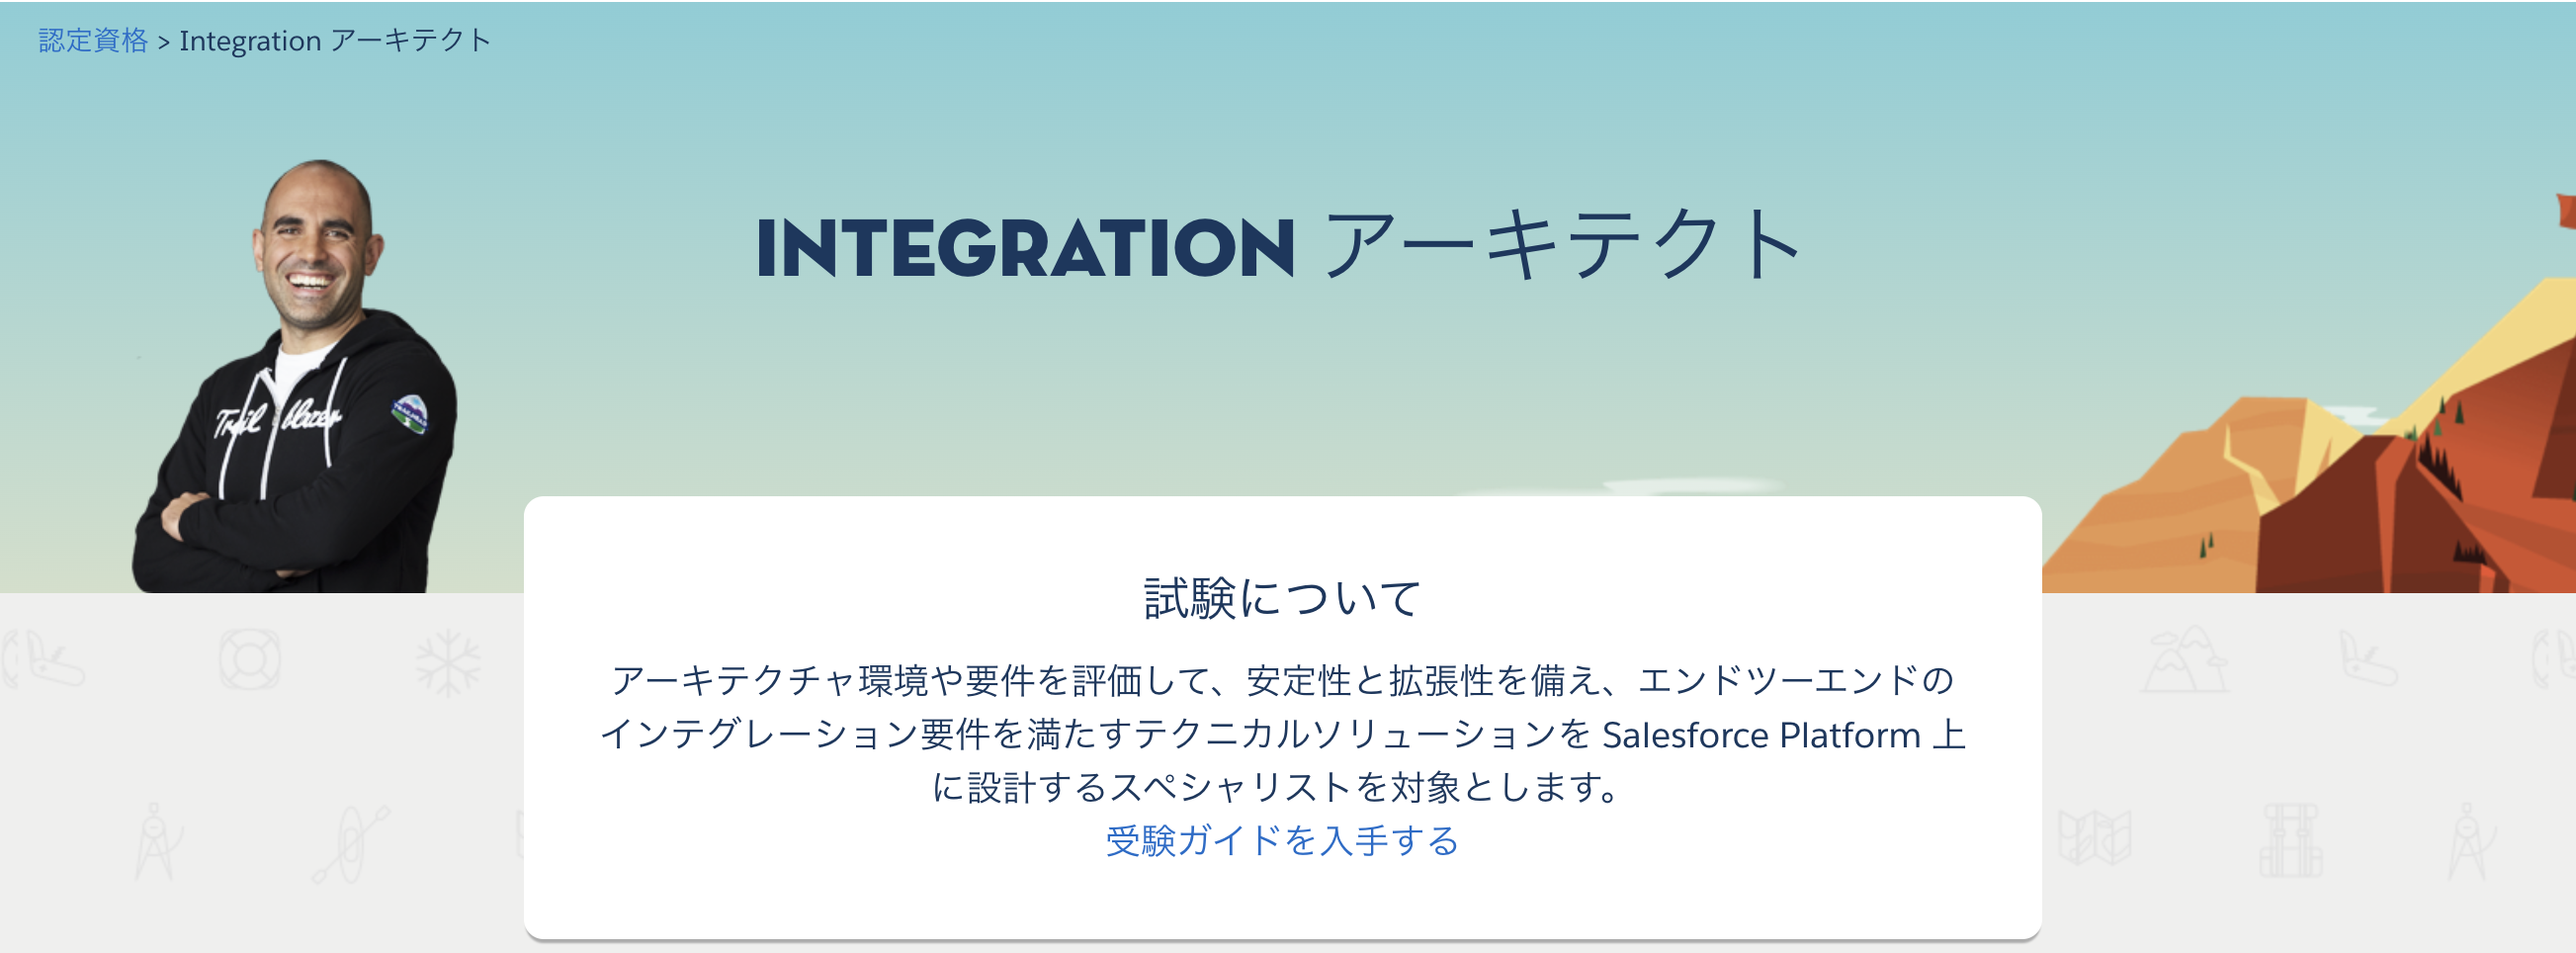 Salesforce 認定 Integration アーキテクト